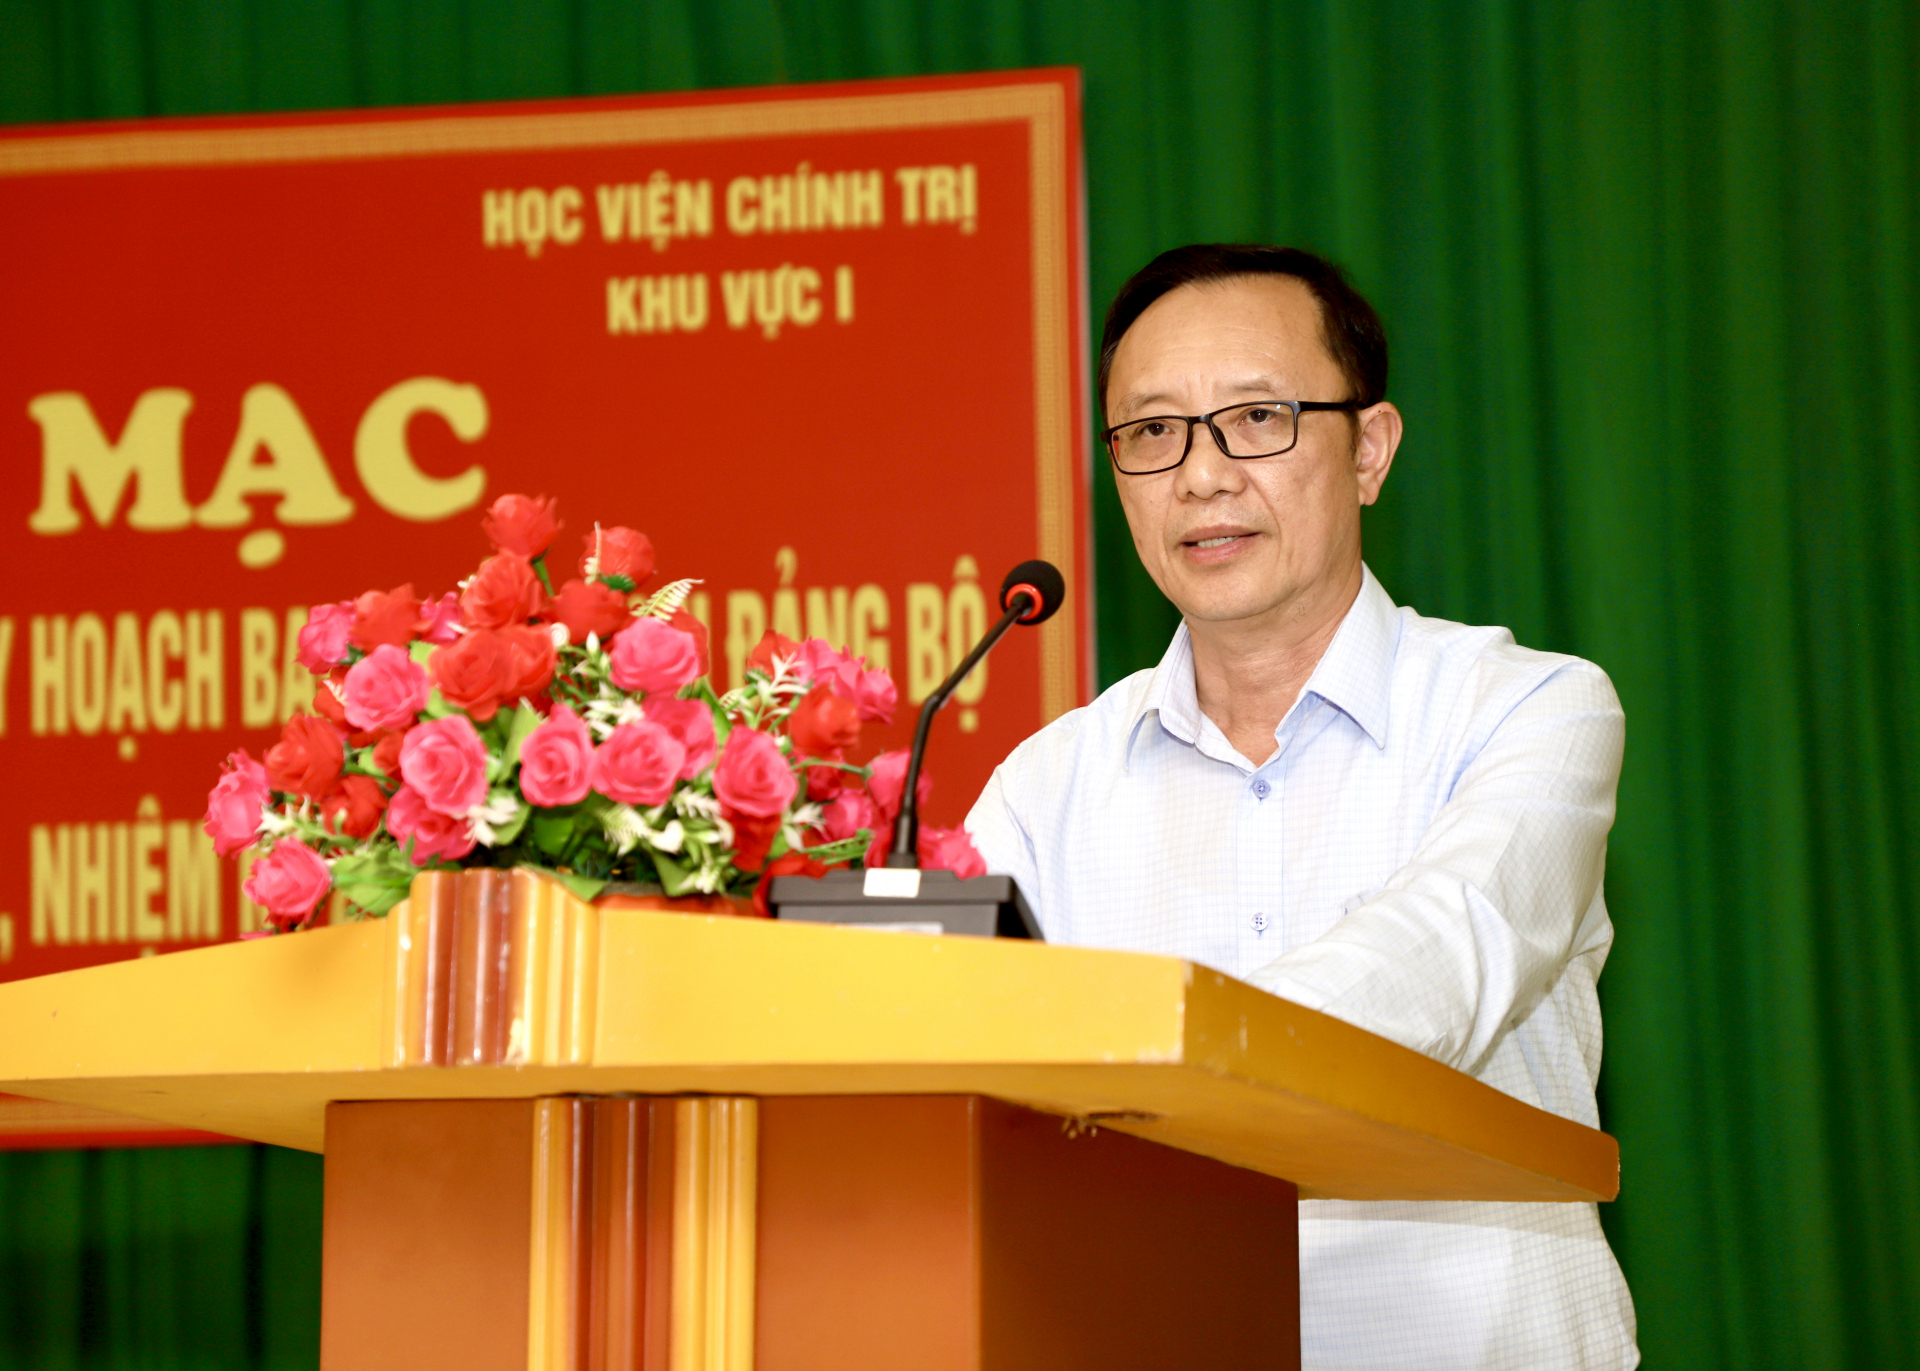 Phó Bí thư Thường trực Tỉnh ủy, Chủ tịch HĐND tỉnh Thào Hồng Sơn phát biểu tại buổi lễ